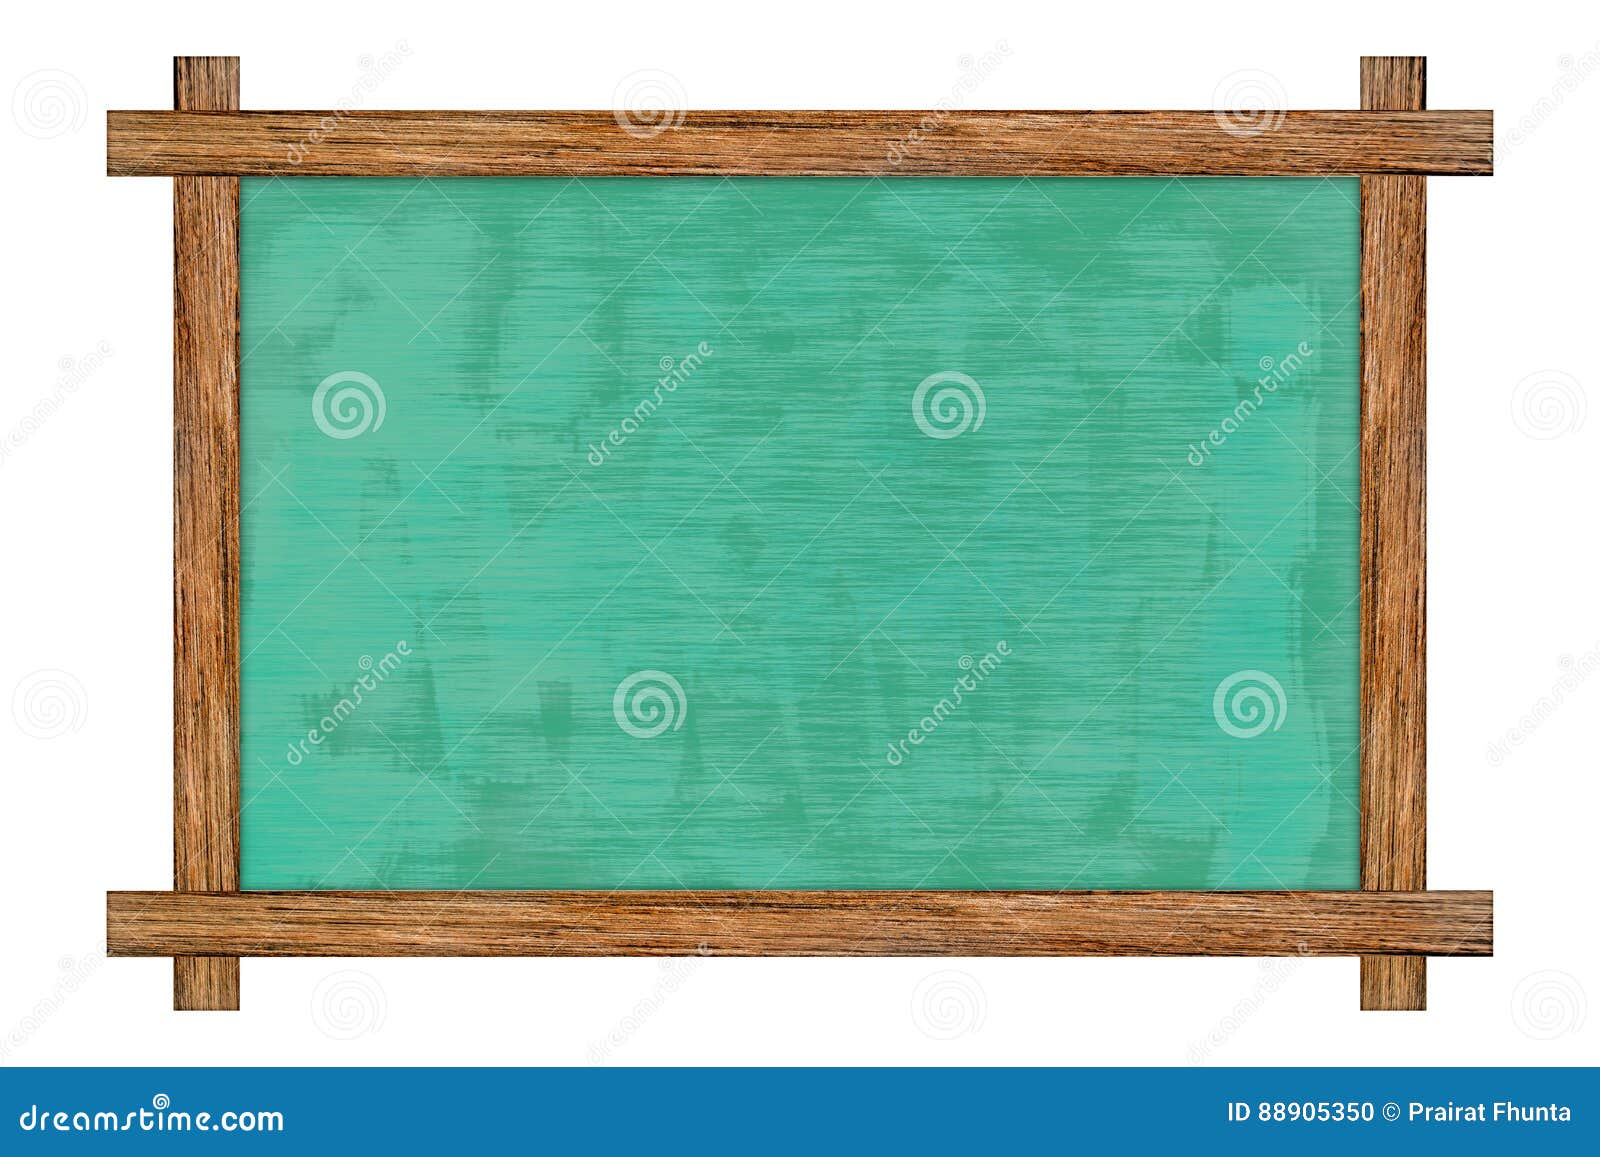 Vintage Wood Framed Slate Chalkboard Stock Photo Image Of